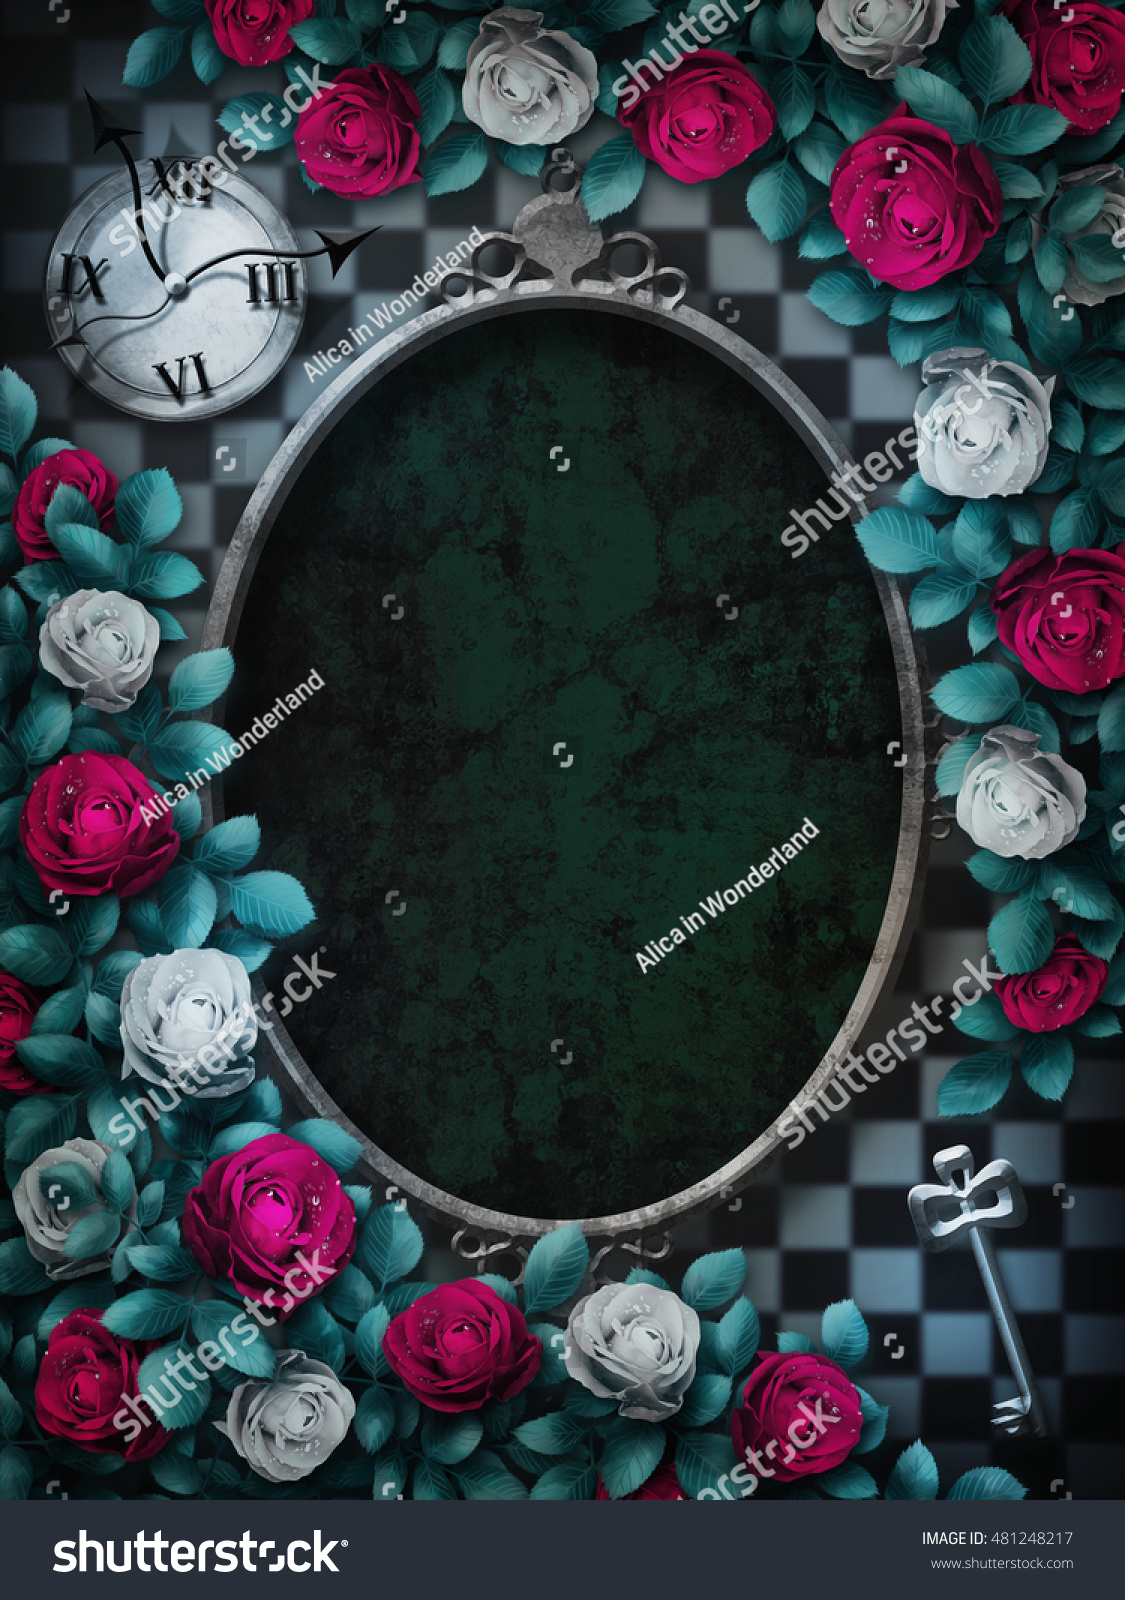 不思議の国のアリス チェスの背景に赤いバラと白いバラ 時計と鍵 バラの花の枠 楕円枠不思議の国の背景 ワンダーランドの壁紙 イラスト のイラスト素材